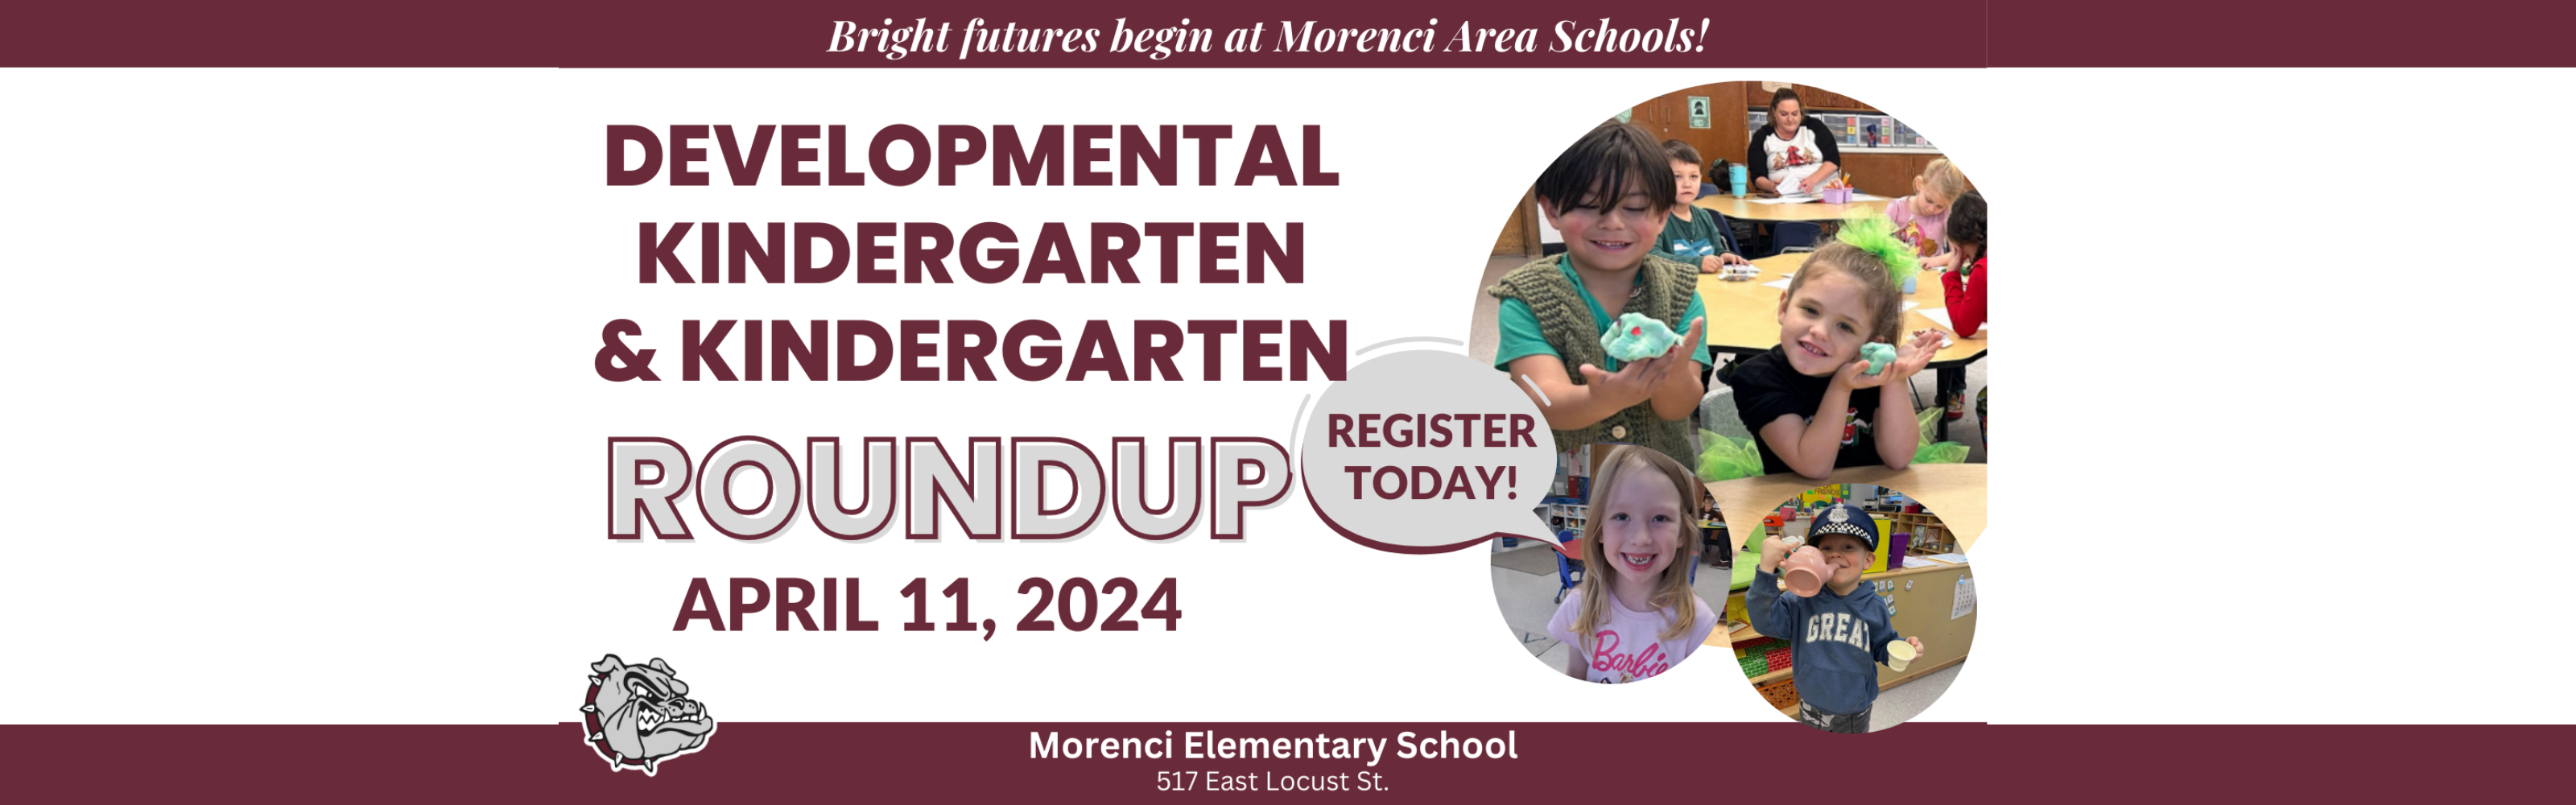 bright futures begin here developmental kindergarten and kindergarten roundup april 11 2024 register now morenci elementary school